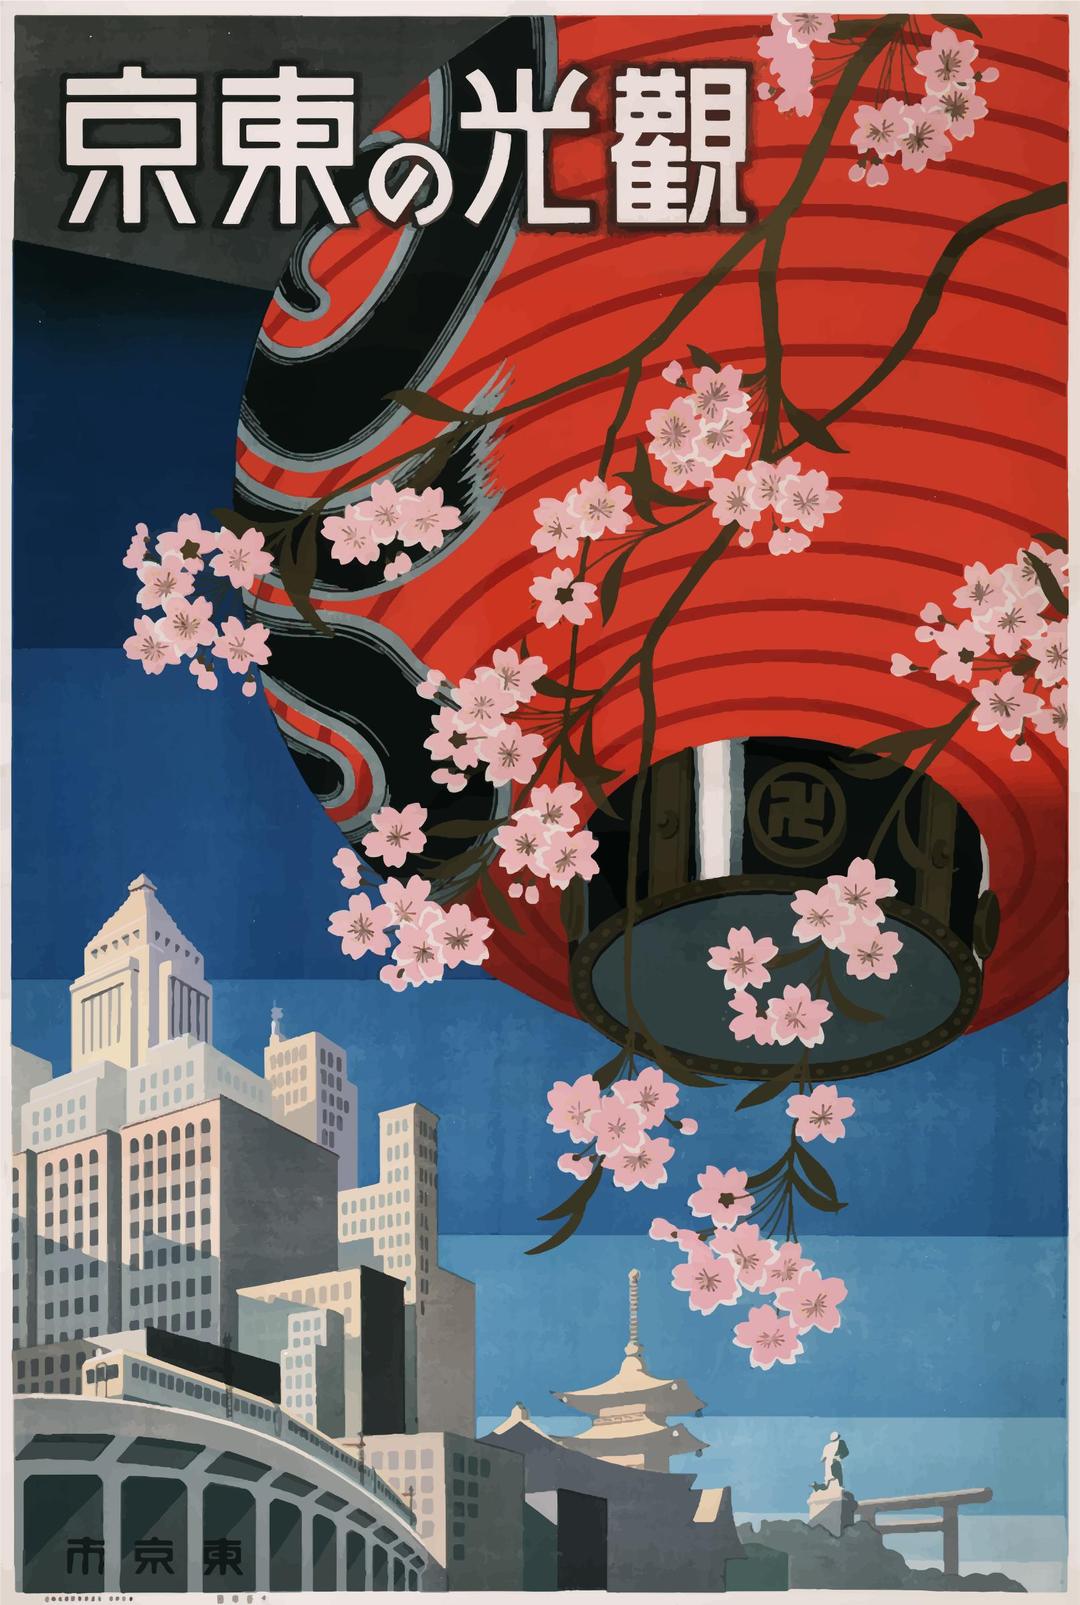 Vintage Travel Poster Tokyo Japan 1930s png transparent